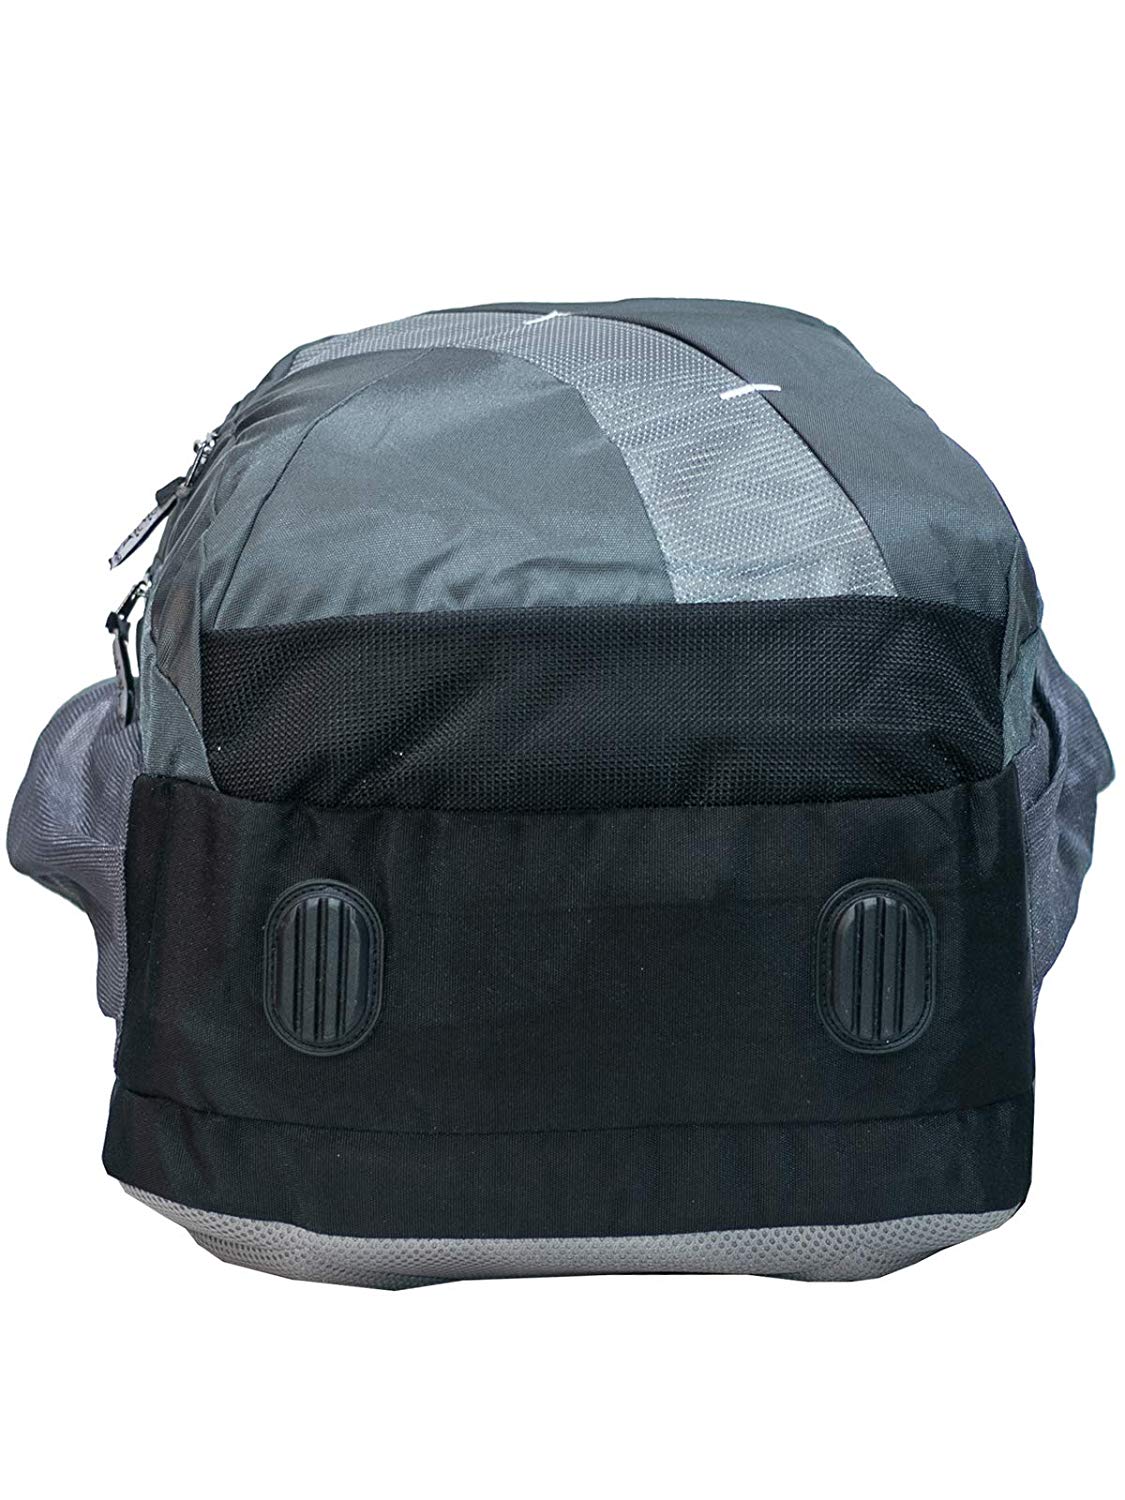 Vaquetta Large Laptop Backpack - De Donne Leather